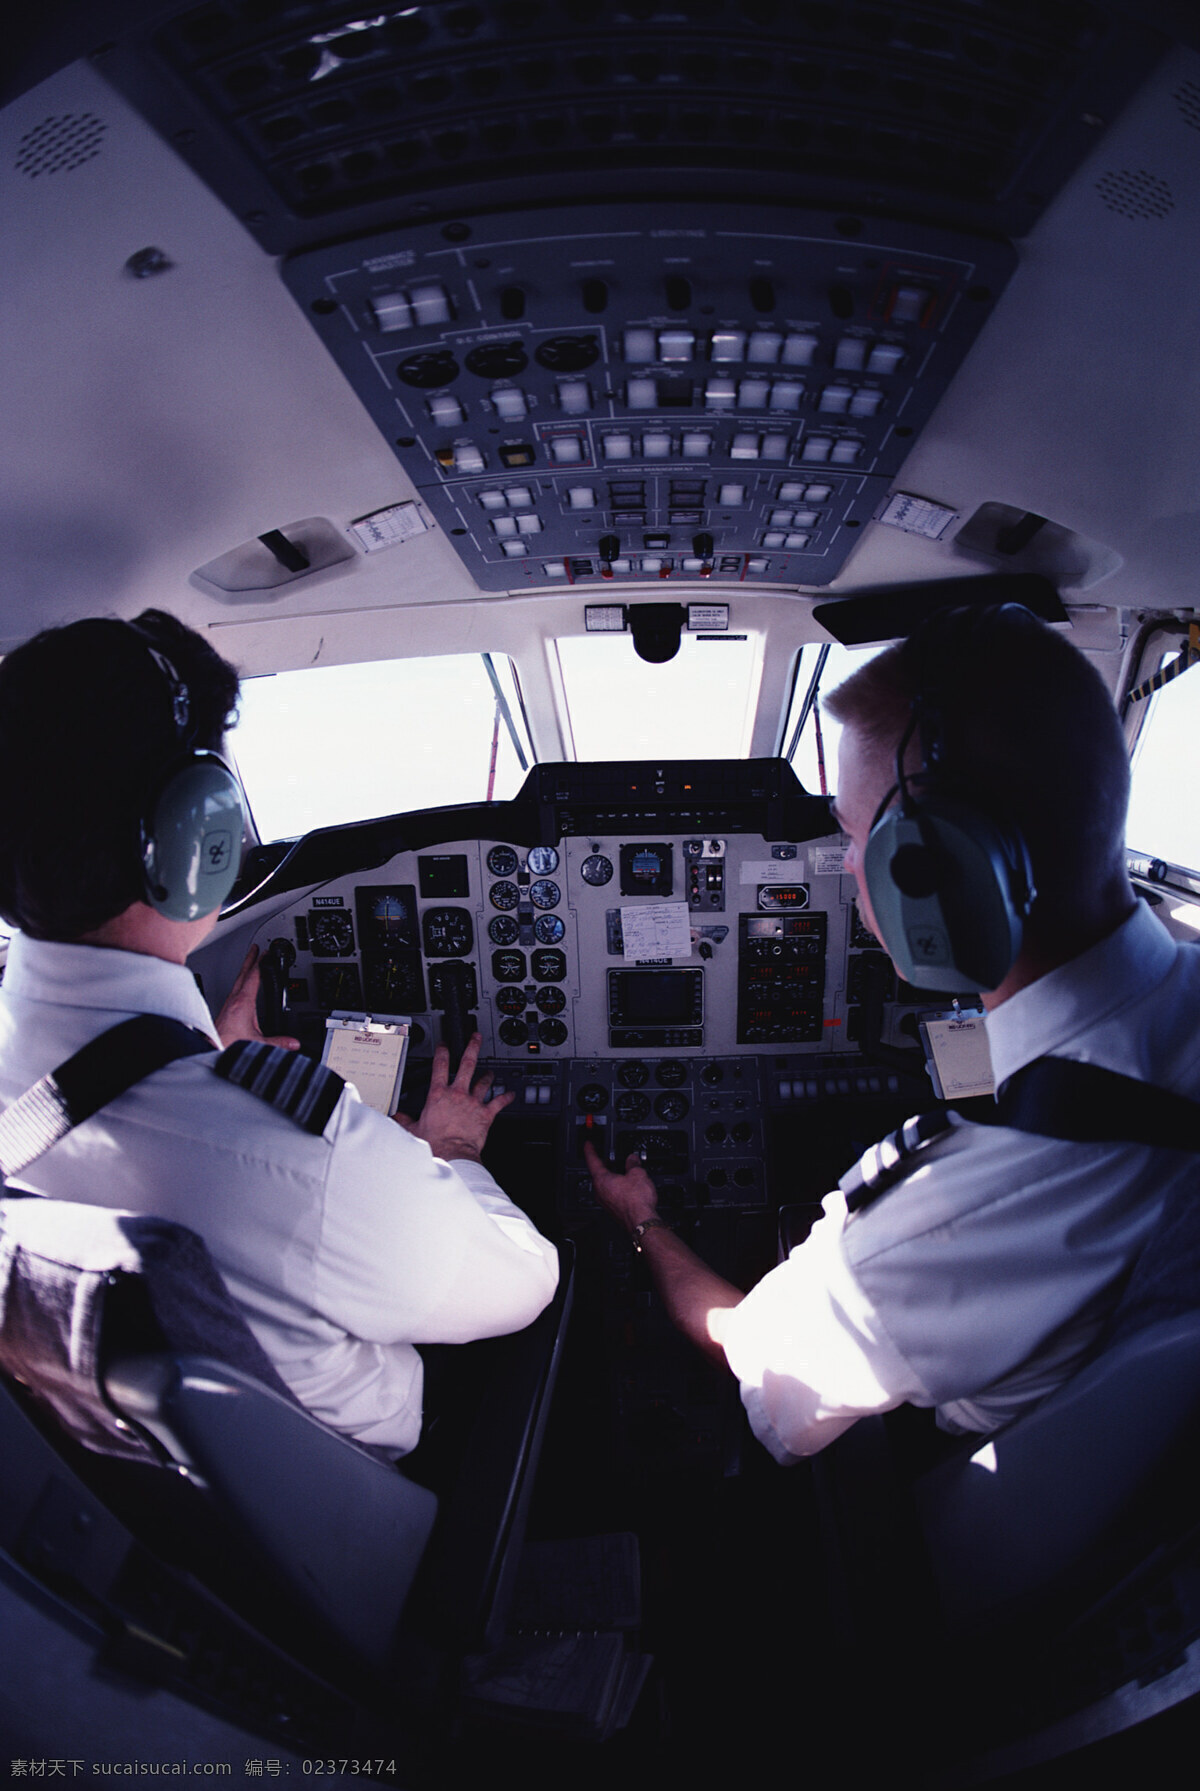 商务 飞机 机舱 飞行员 机头 起航 商务金融 商务素材 摄影图库 现代科技 交通工具